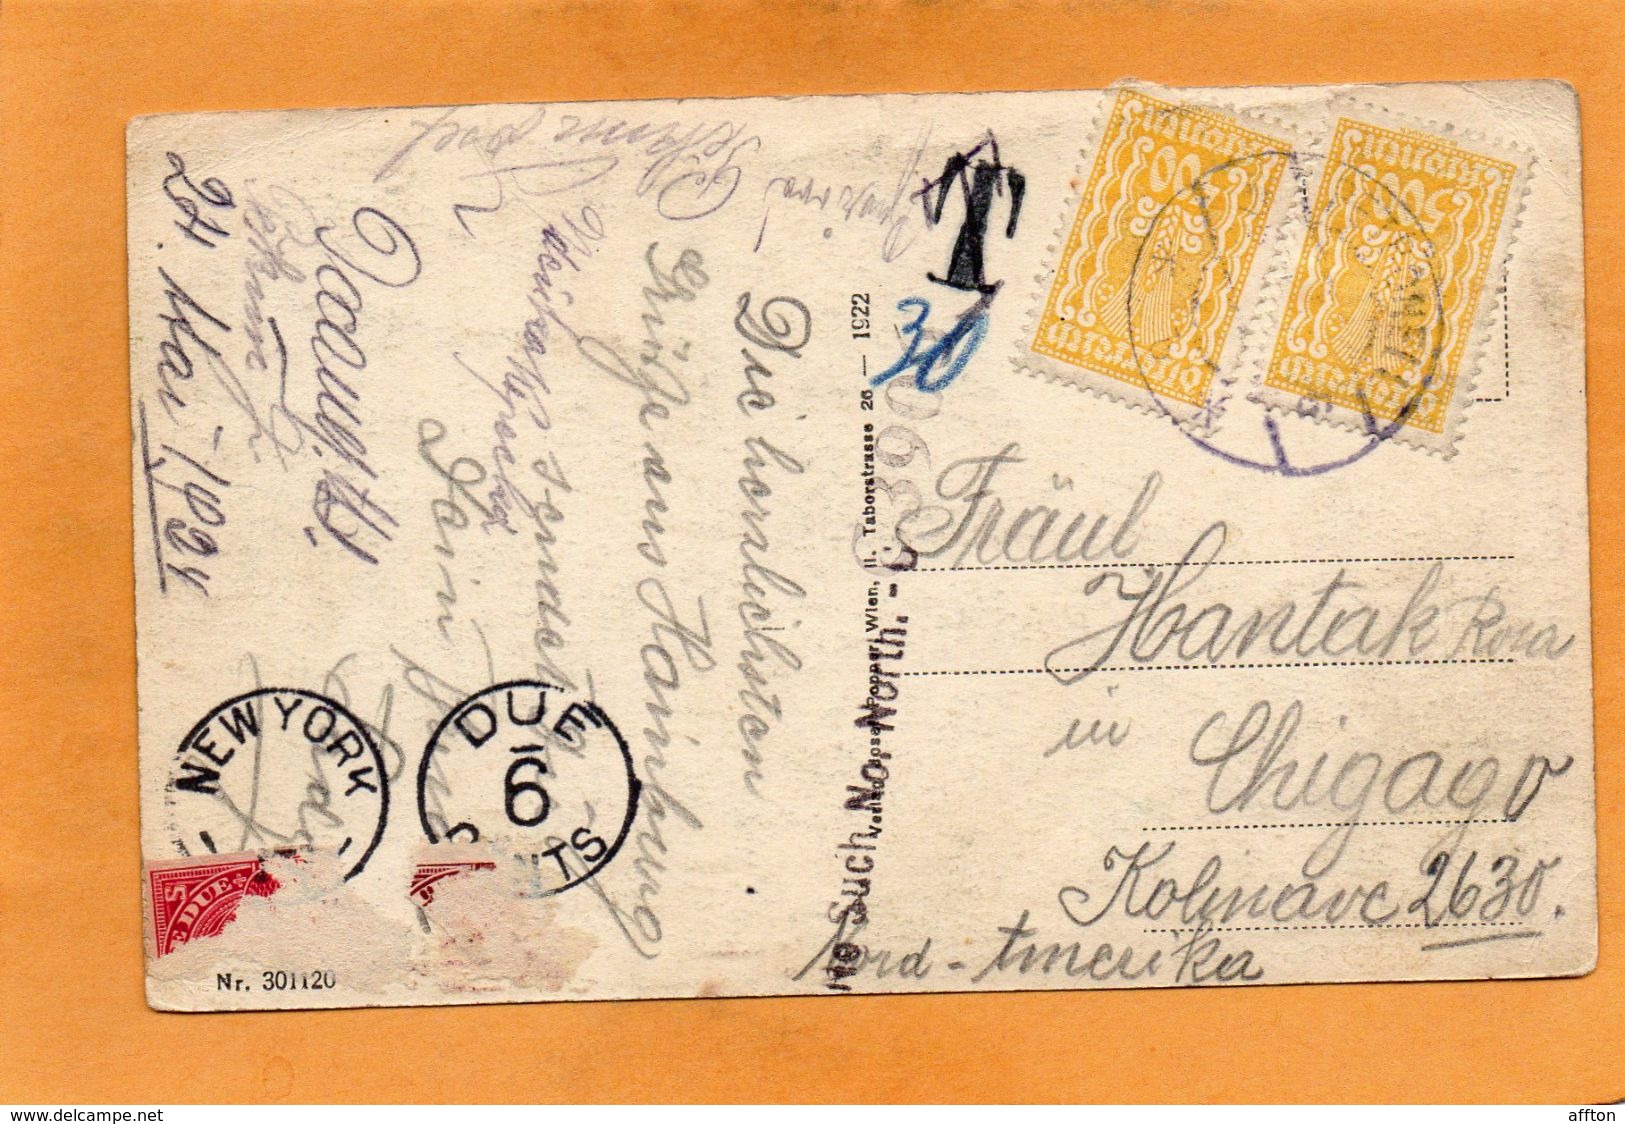 Hainburg A.d. Donau 1922 Postcard Postage Due - Hainburg